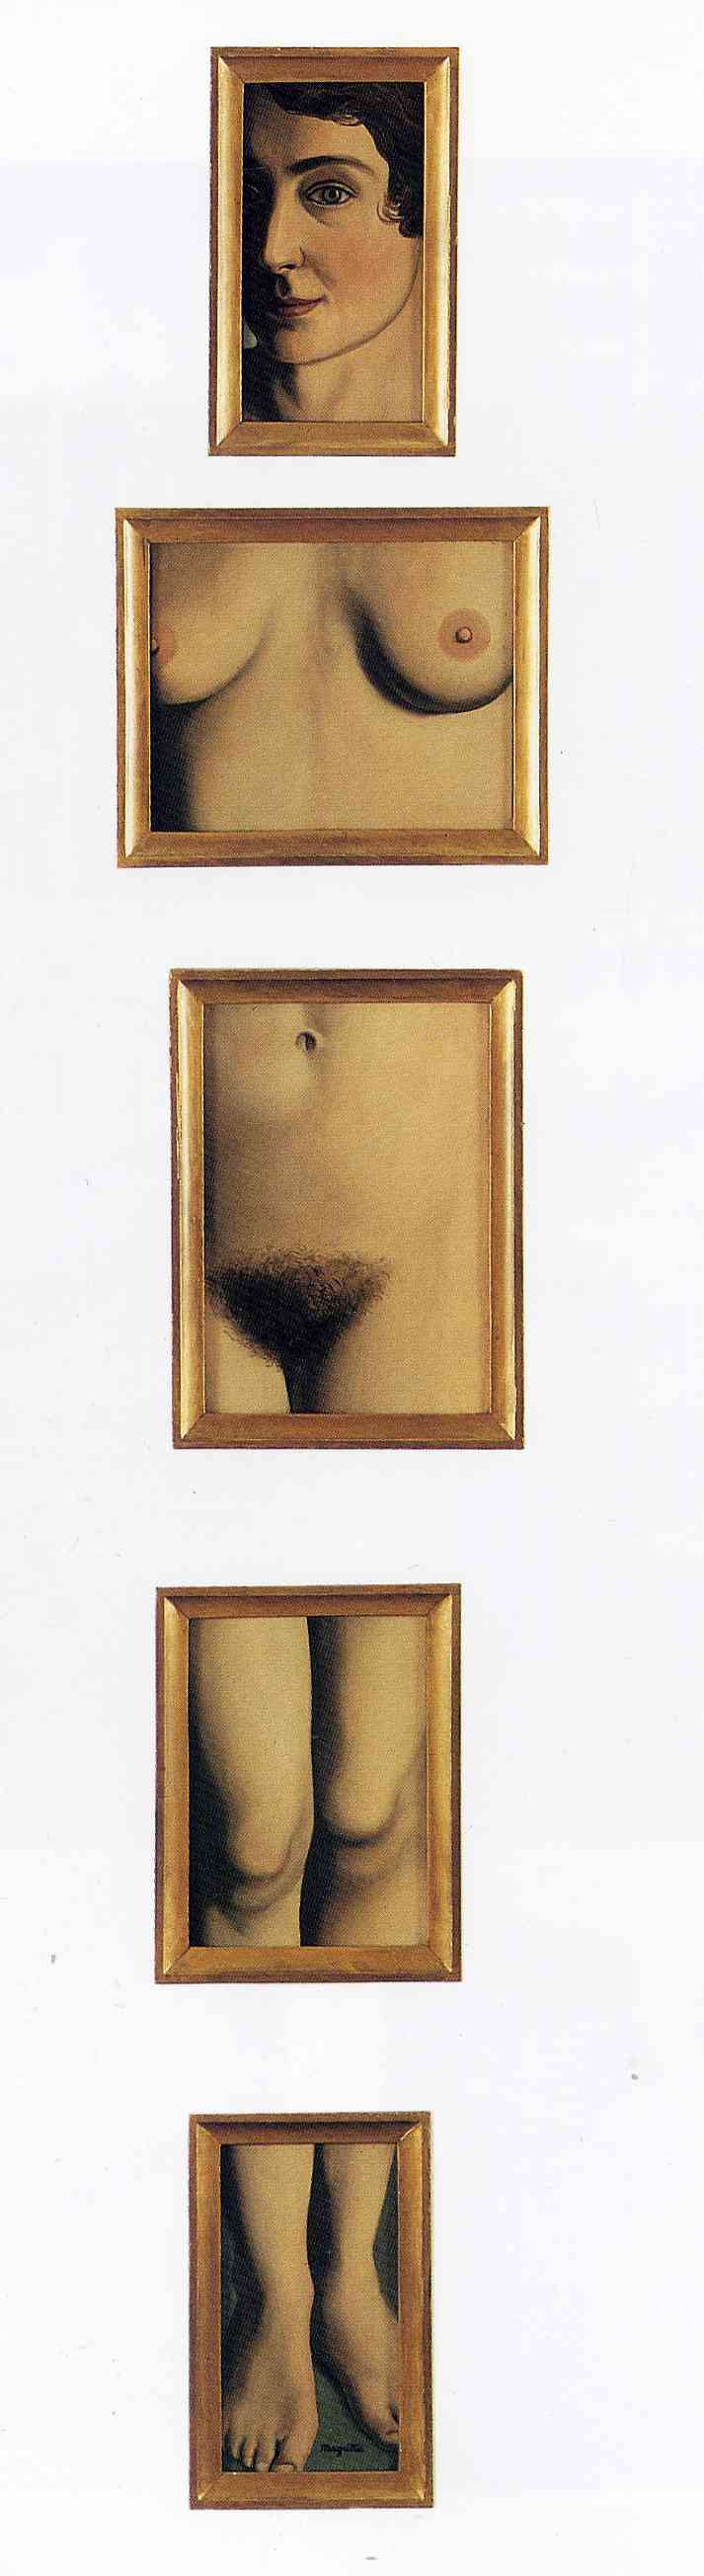 René Magritte. Eternal proof